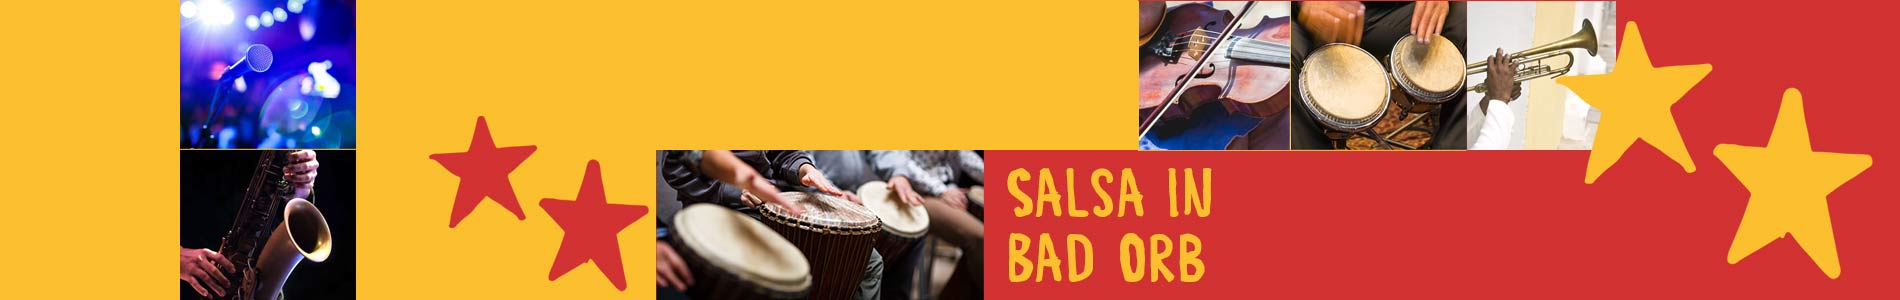 Salsa in Bad Orb – Salsa lernen und tanzen, Tanzkurse, Partys, Veranstaltungen